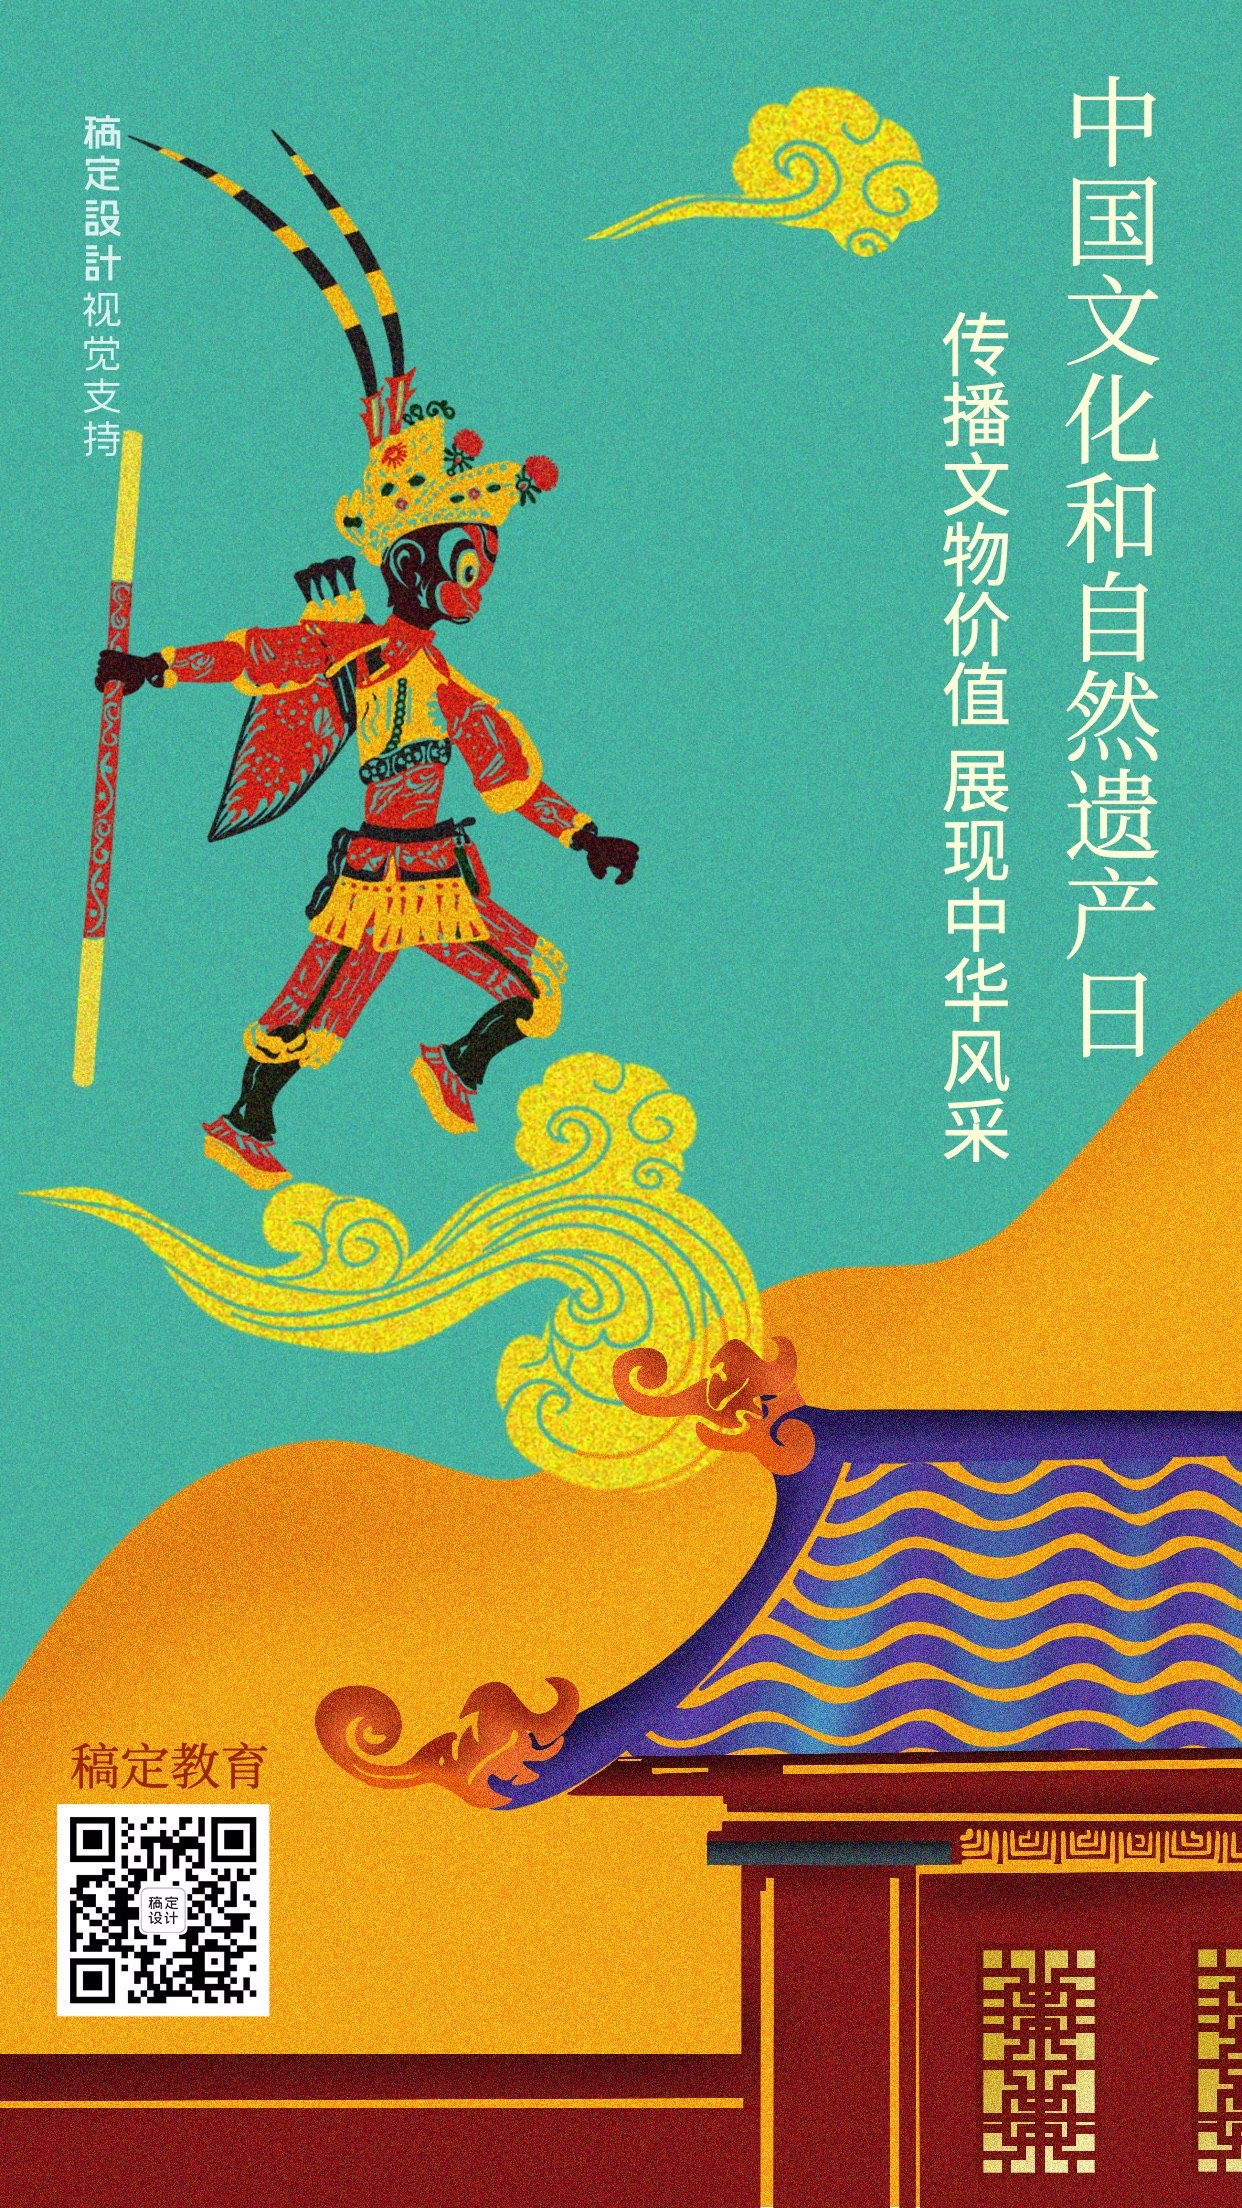 非遗文化遗产日中国风祝福宣传海报